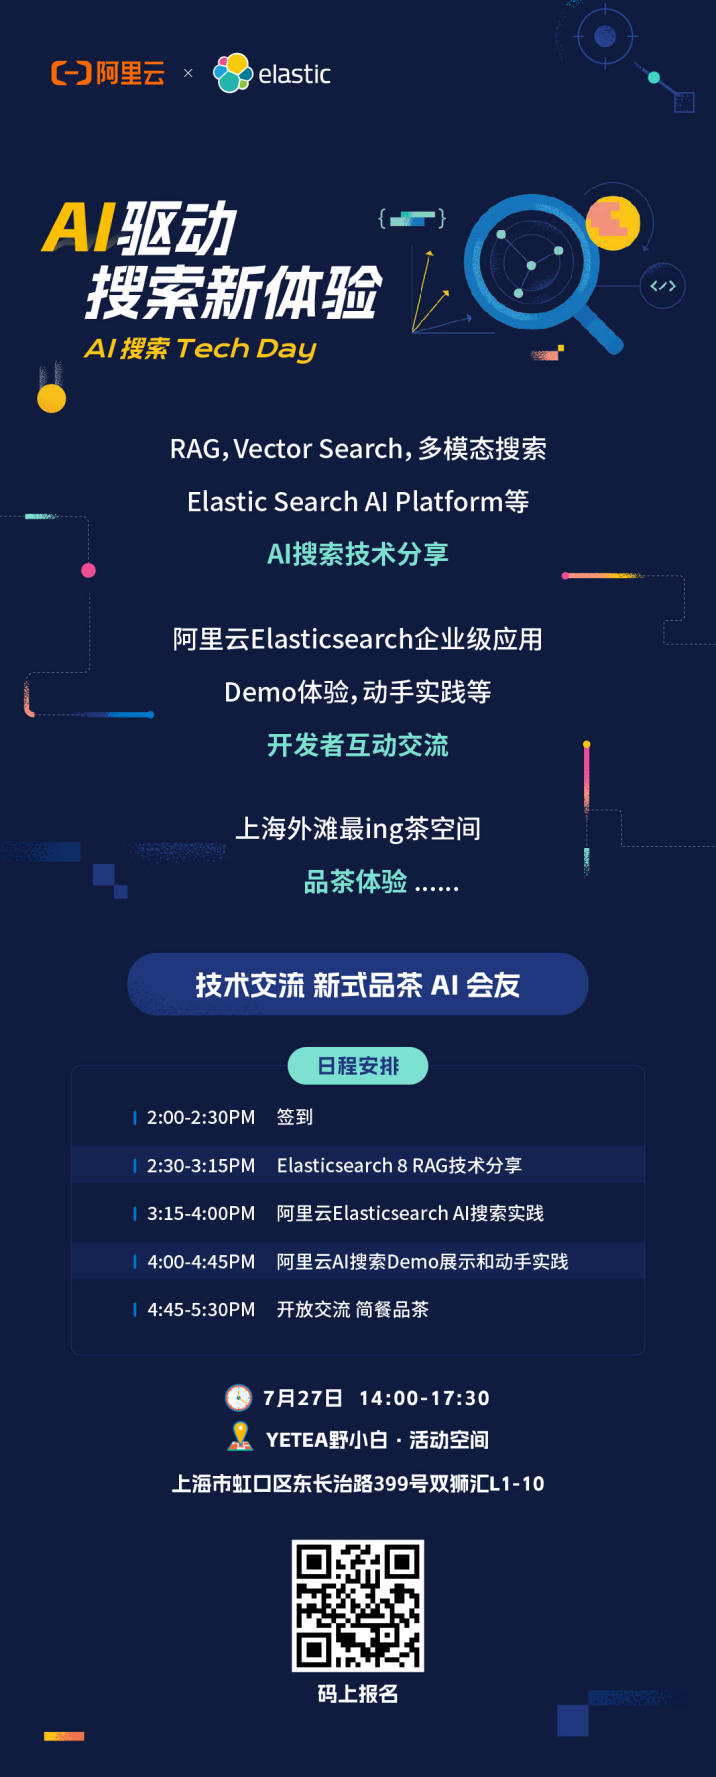 【7月27日丨上海】Elastic & 阿里云邀您参加 AI 搜索 Tech Day_人工智能